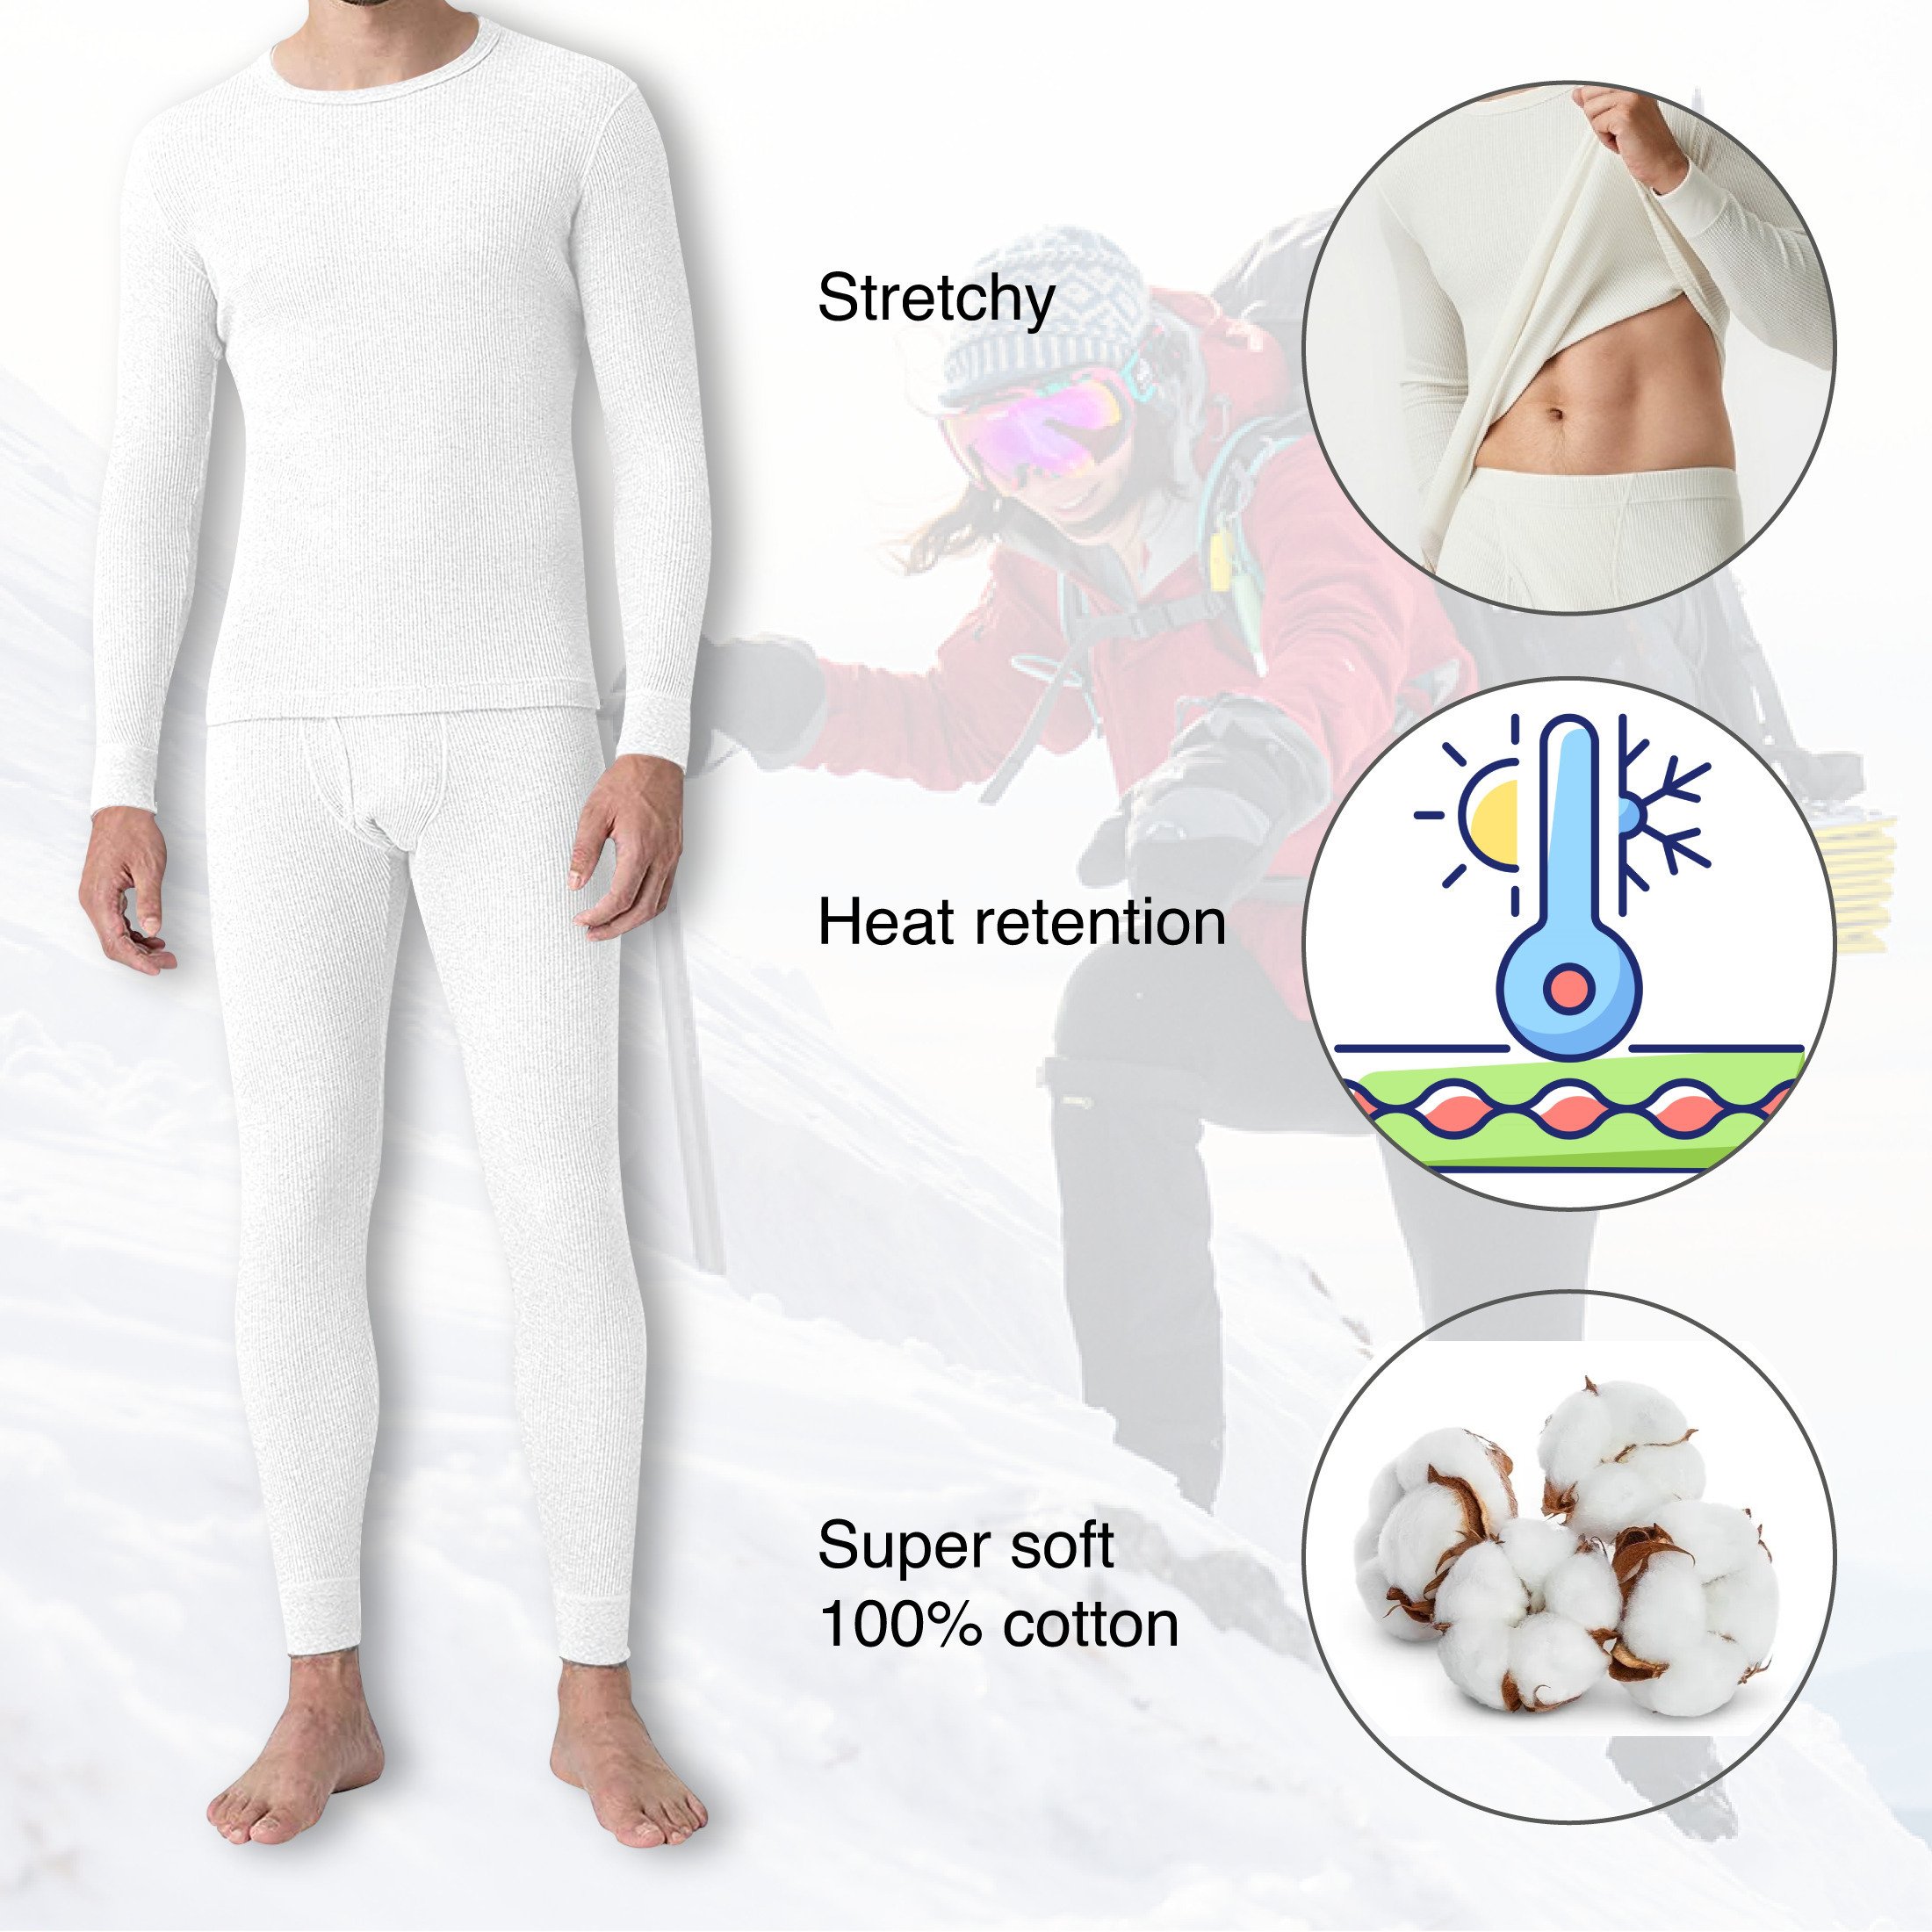 2-Sets: Men's Super Soft Cotton Waffle Knit Winter Thermal Underwear Set - White & Navy, Medium